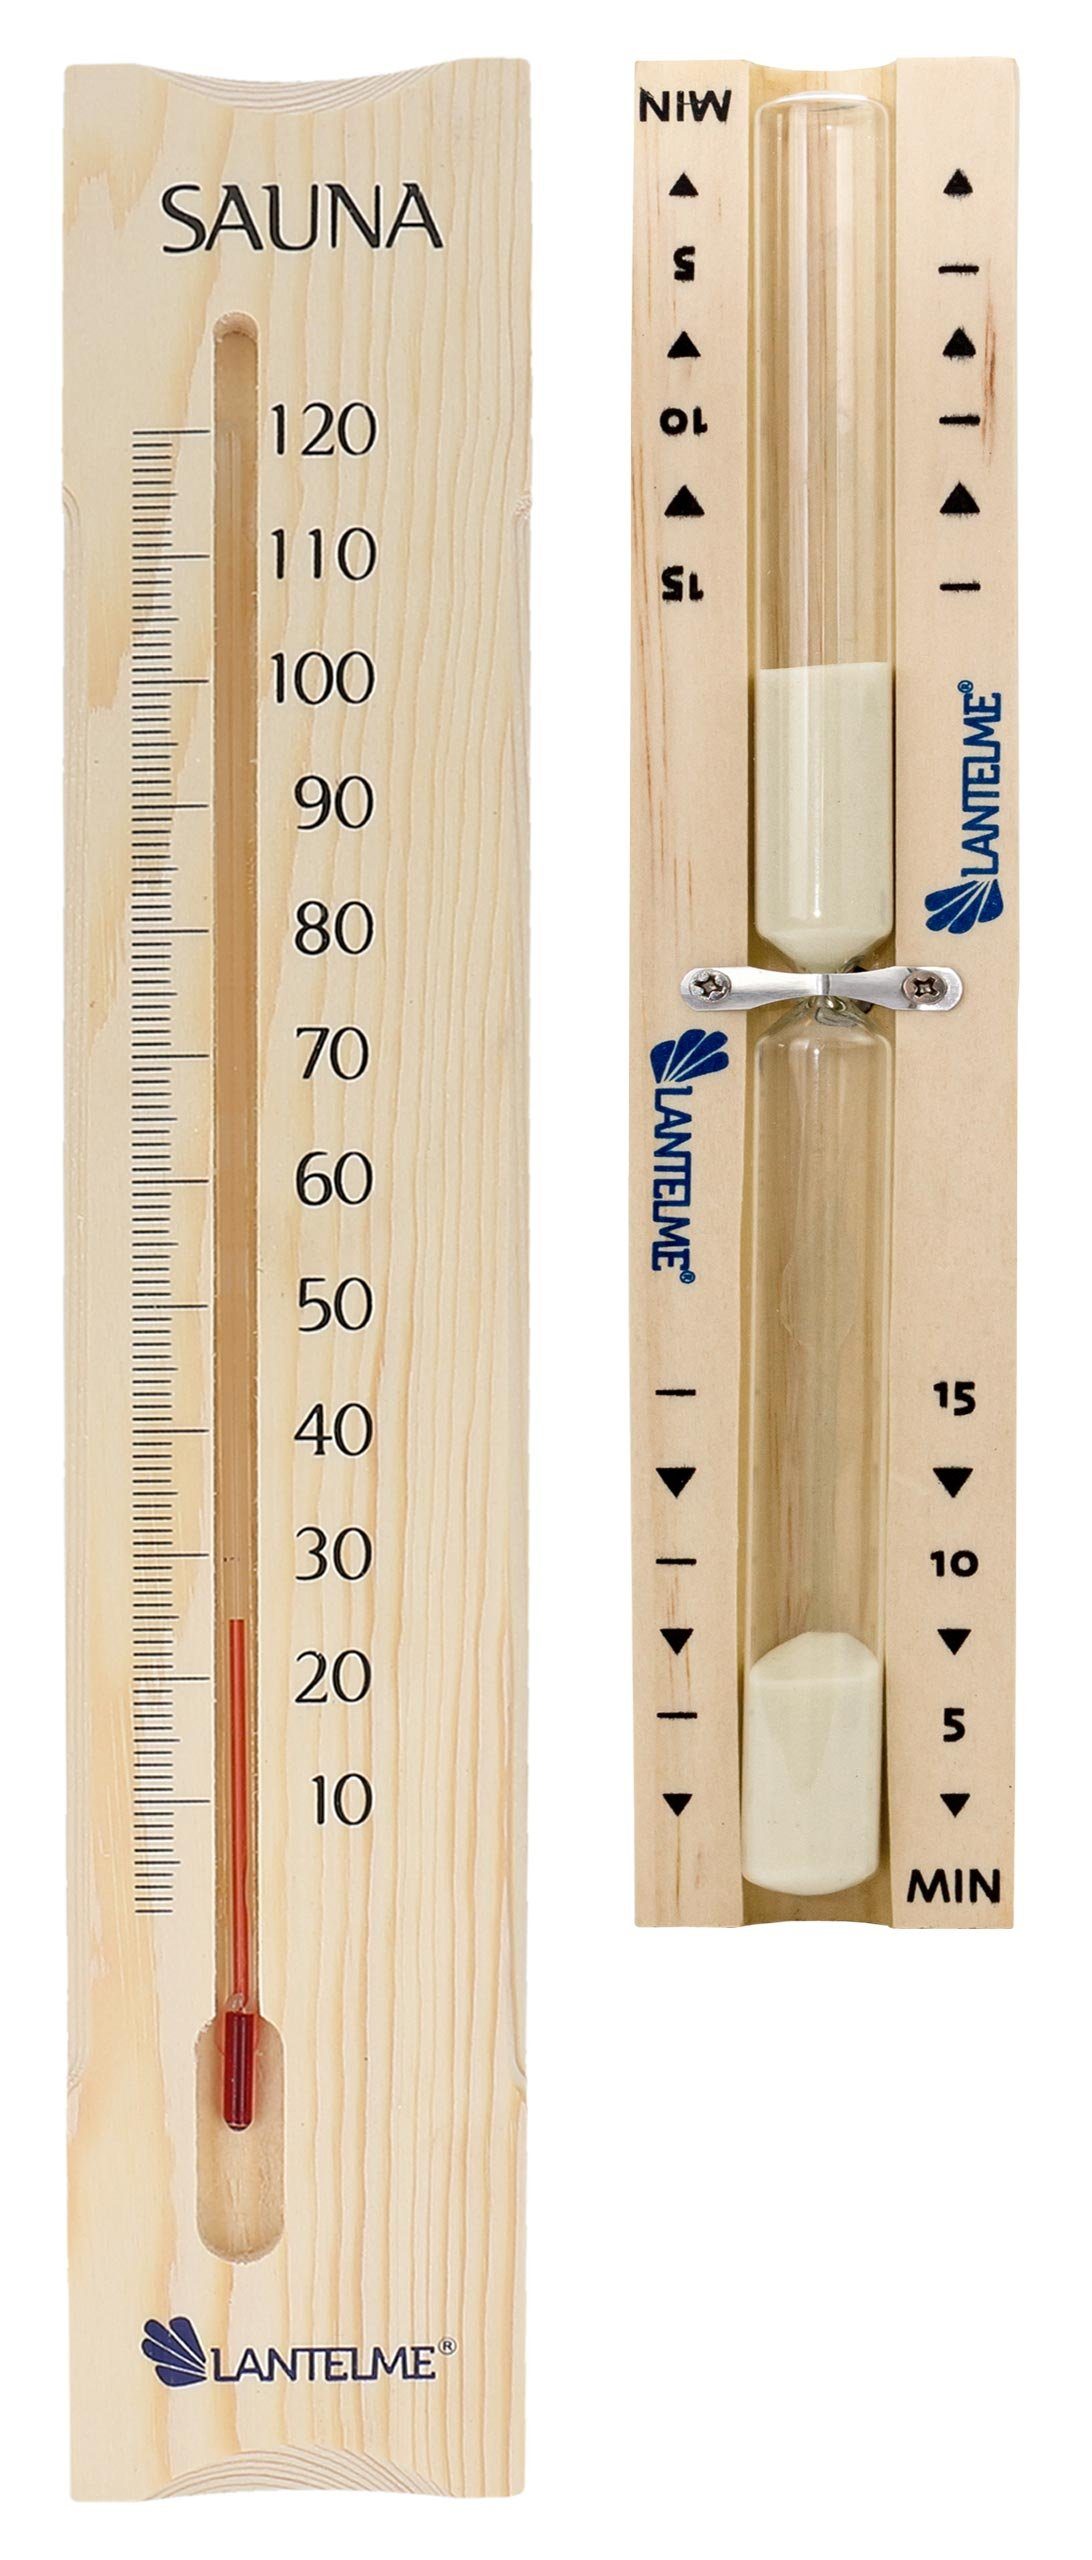 Lantelme Sauna-Sanduhr Set Min Sanduhr Holz und 38cm Sauna Zubehör Thermometer 5